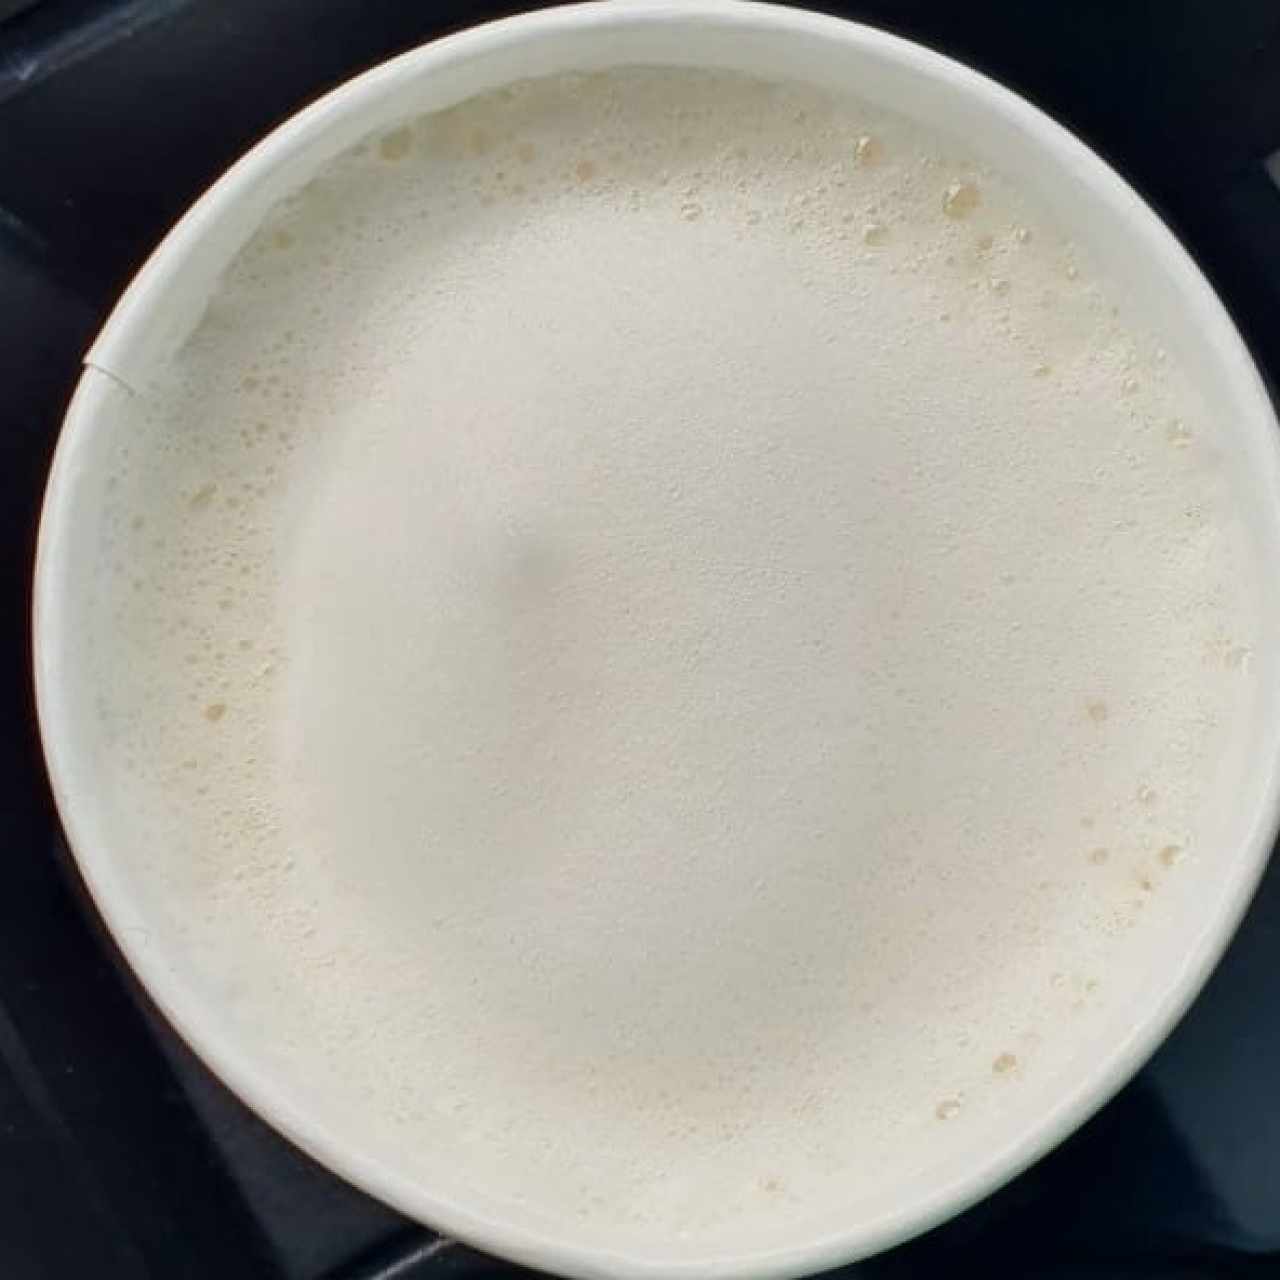 Espresso - Latte